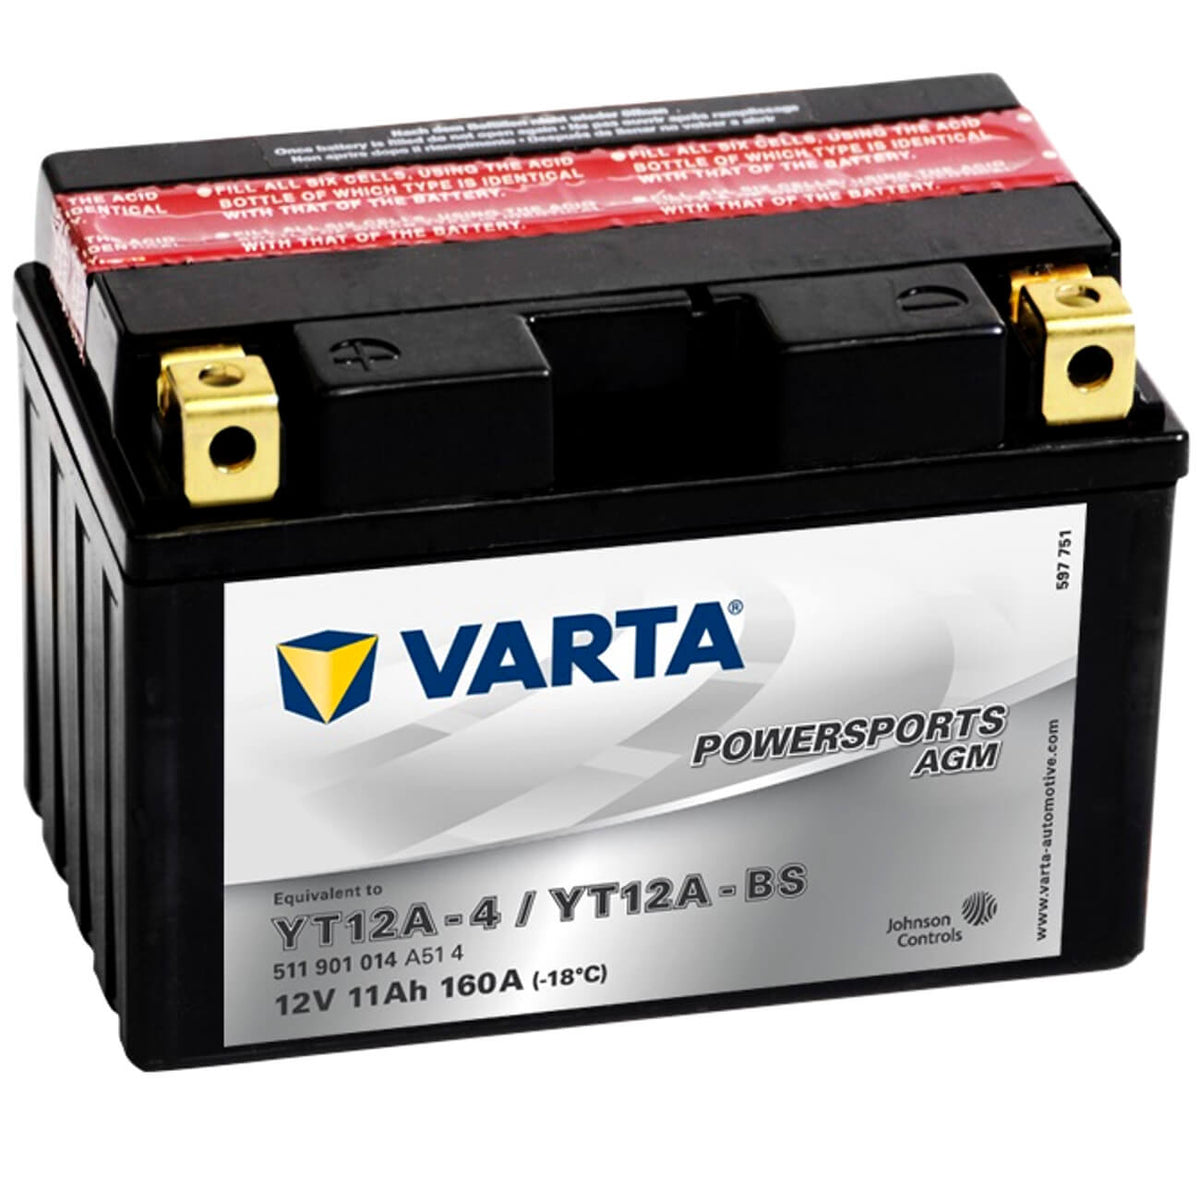 Varta Powersports 511901 AGM 12V 11Ah 160A